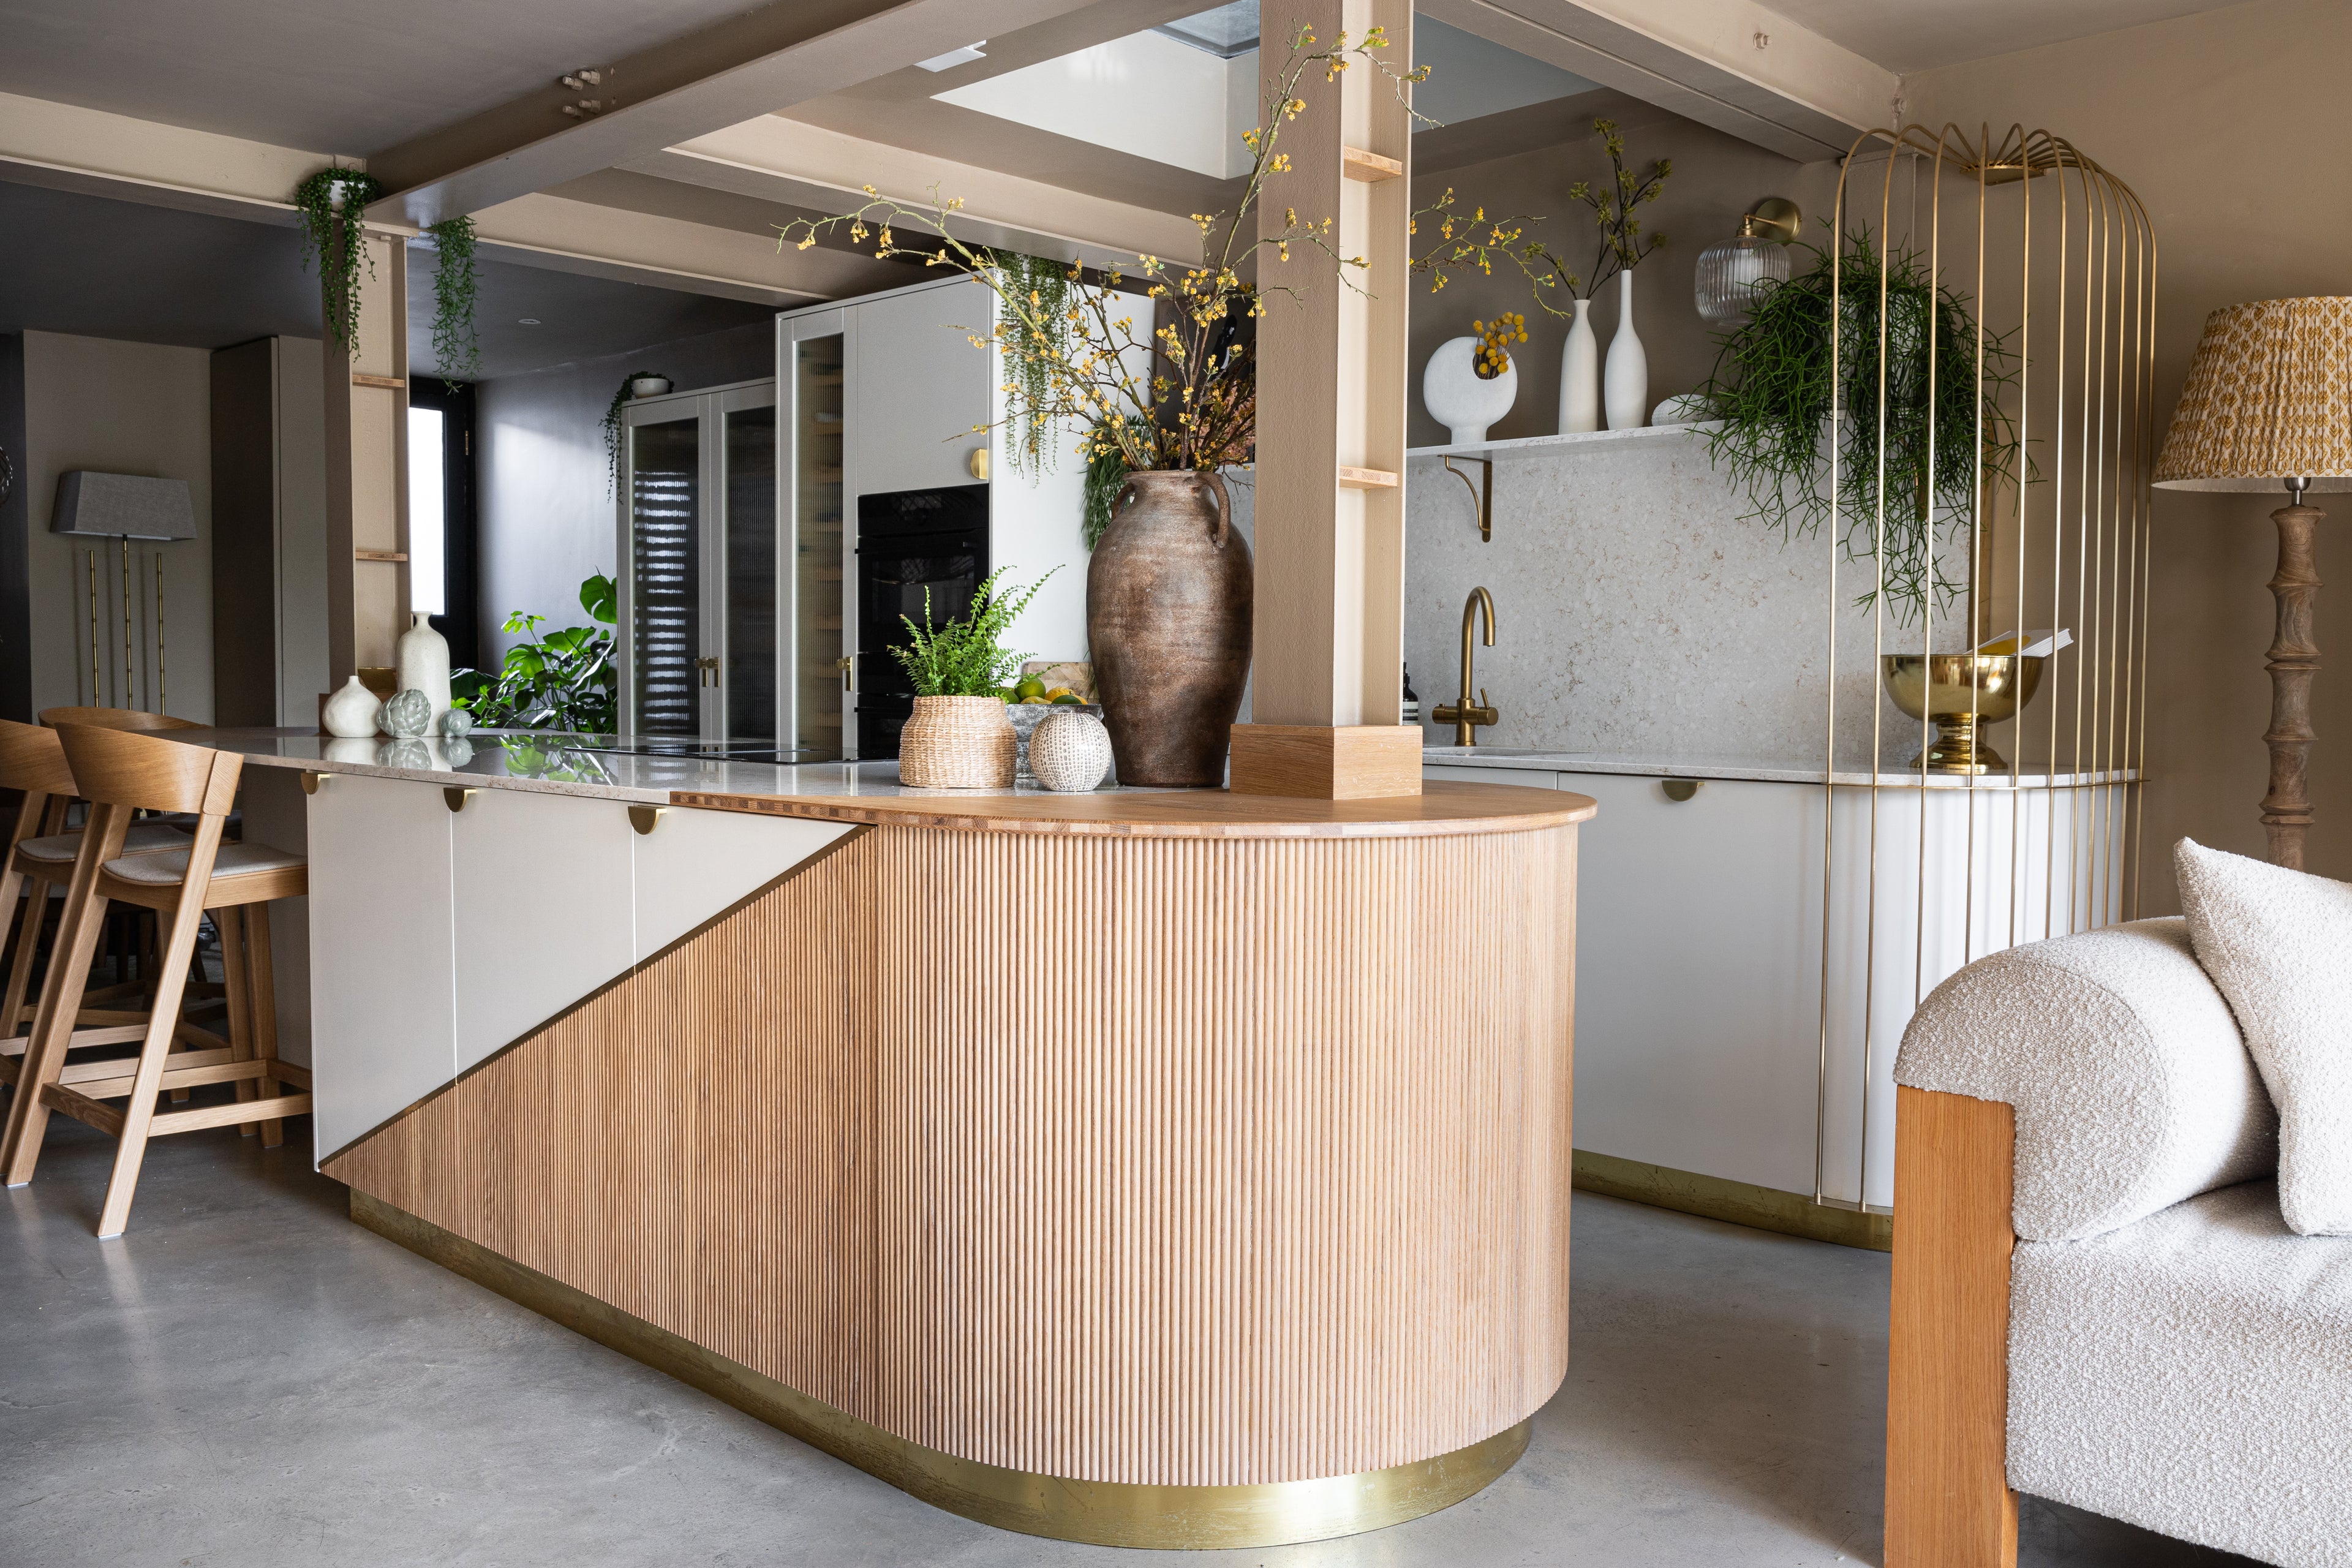 woodworks brighton carpentry, joinery, interior design, architects. bespoke birdcage in brass for modern luxury kitchen